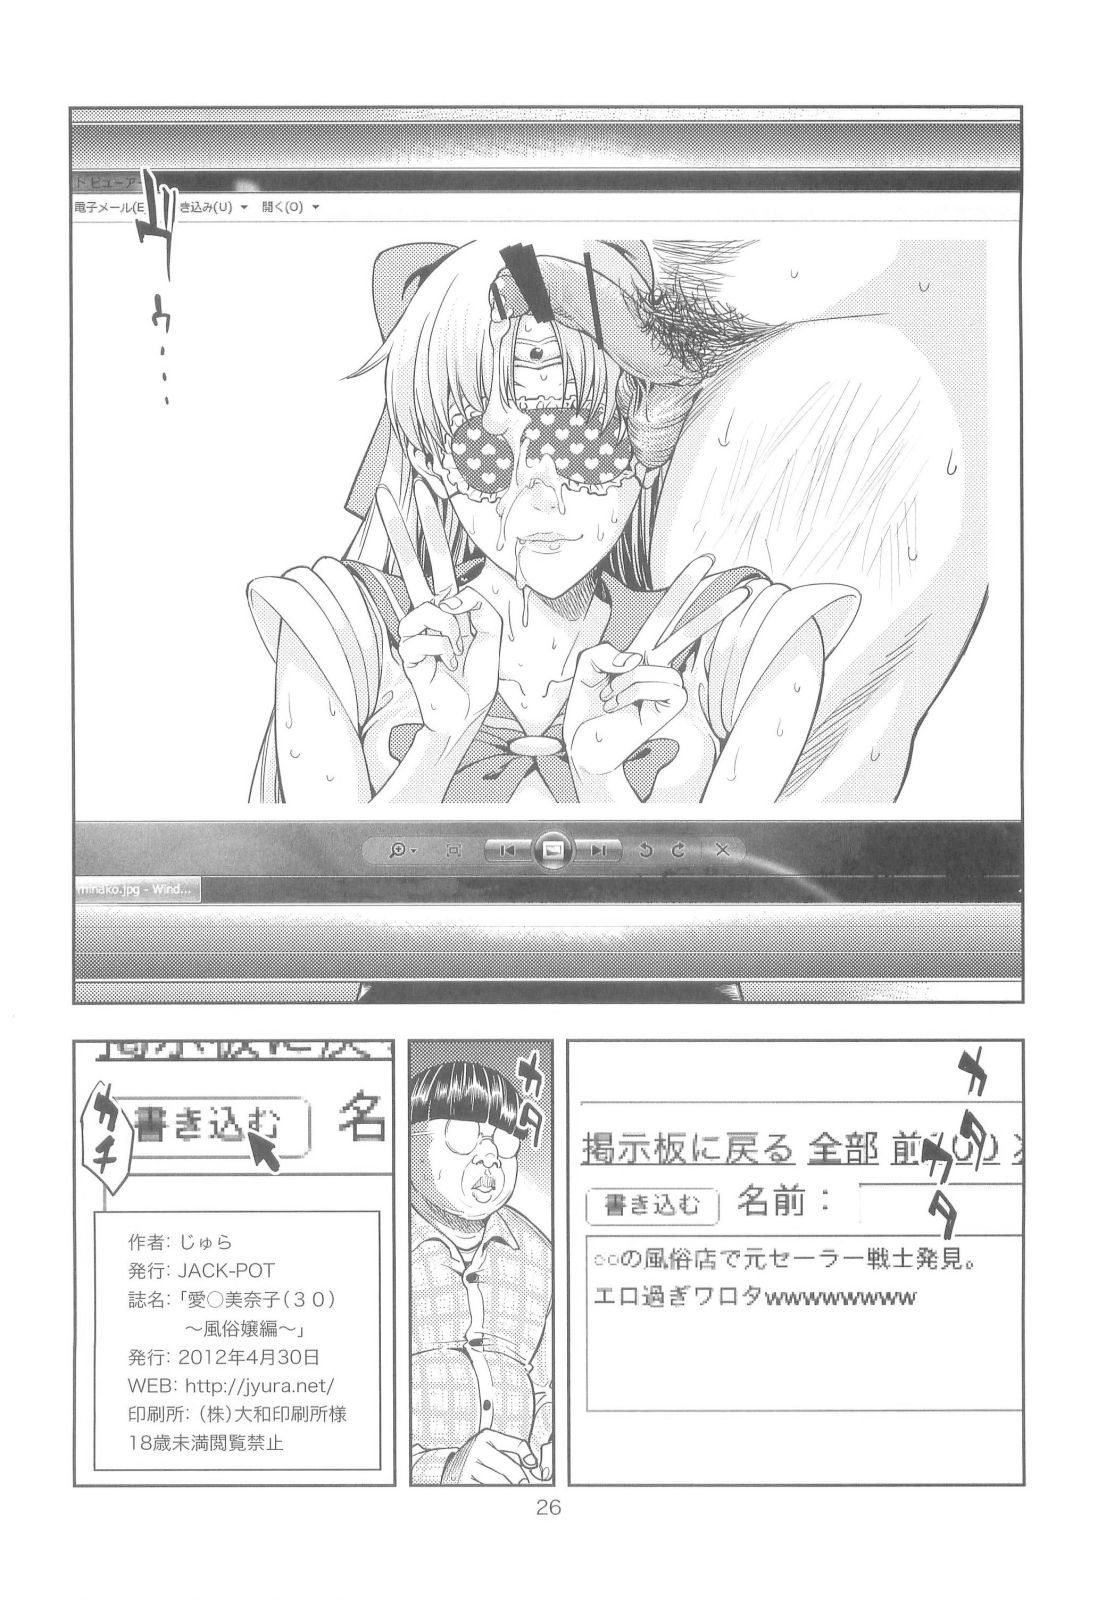 【セーラームーン】風俗嬢の美奈子はゲス男に弱みを握られ、目隠し状態でハメ撮りされることに...。の画像25枚目